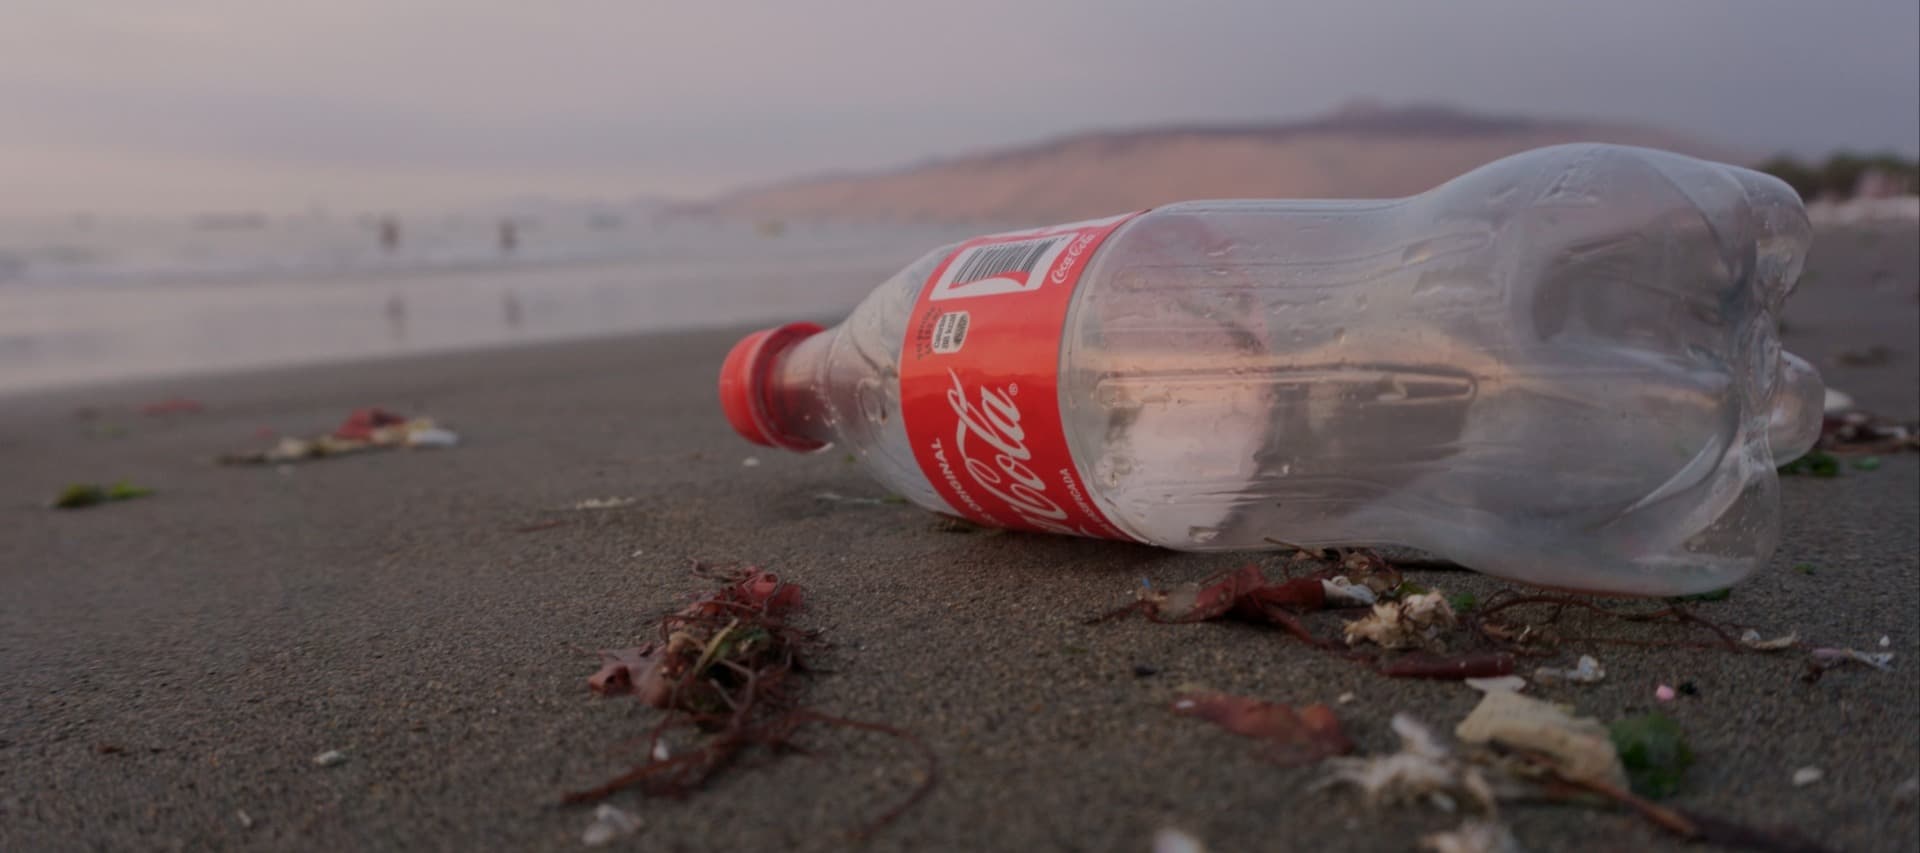 Фото новости: "Coca-Cola инвестировала в стартап для переработки цветной упаковки и контейнеров"